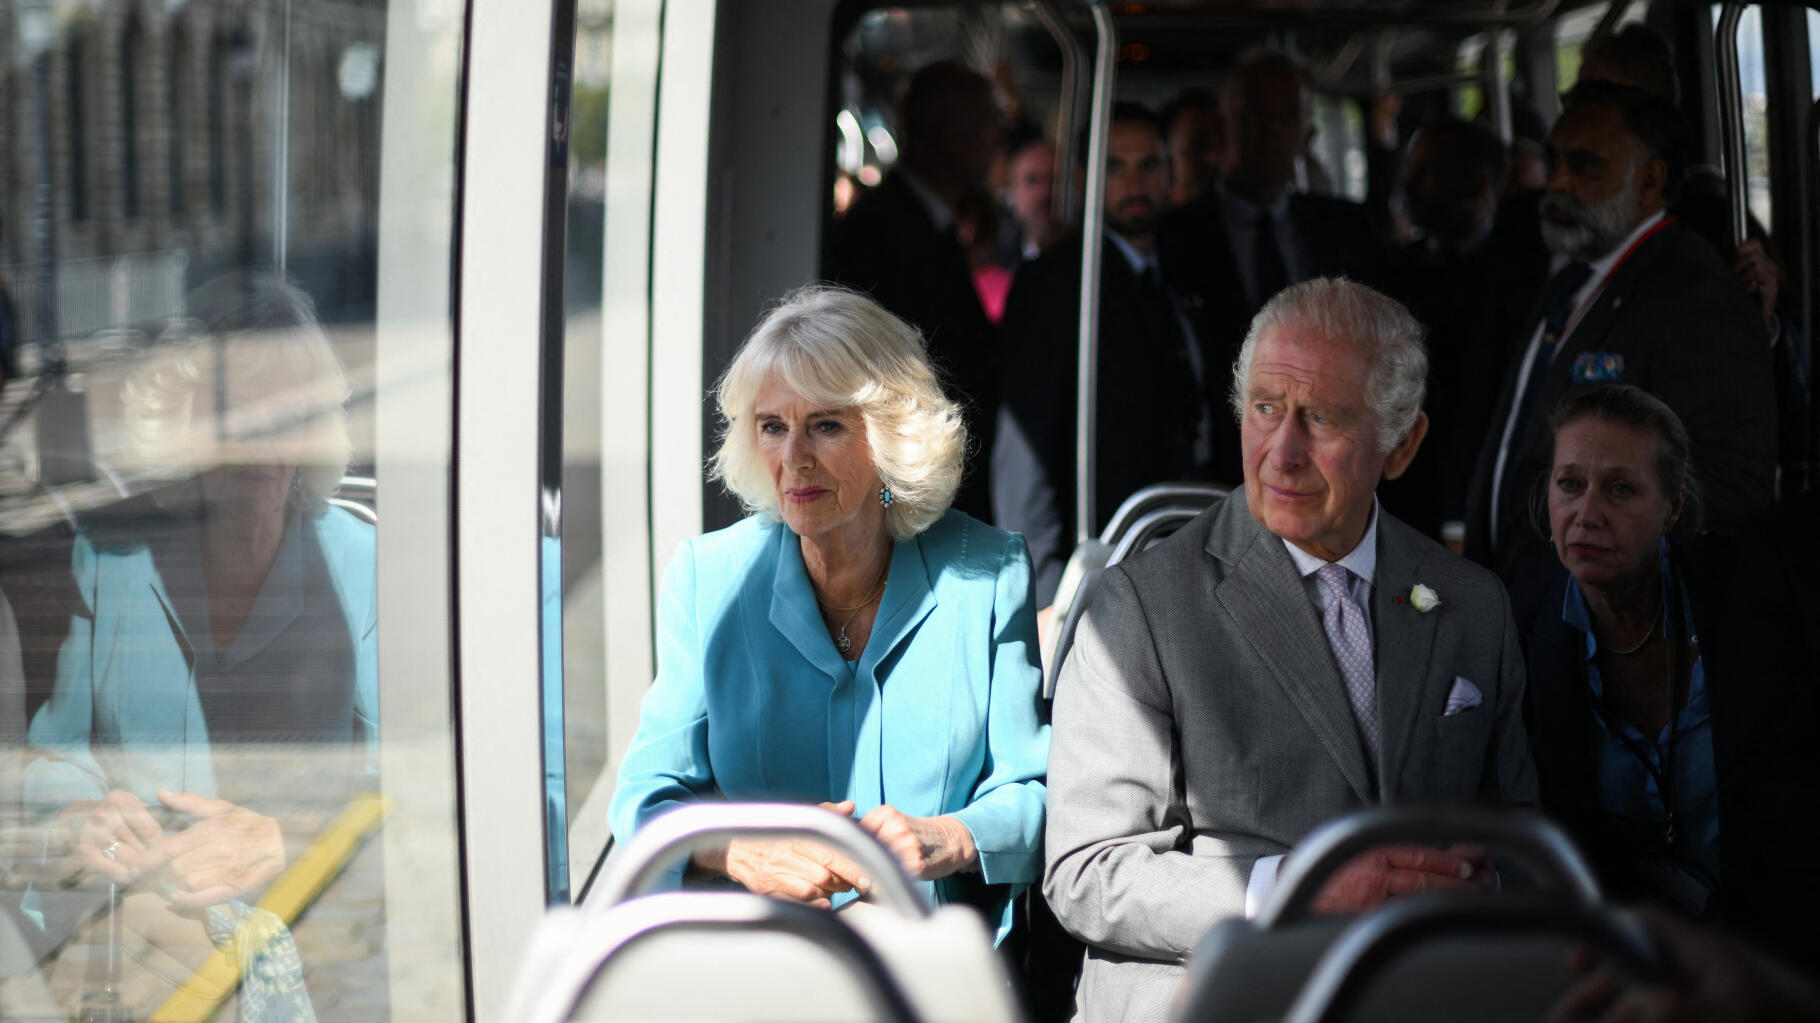 Charles III et Camilla s’offrent une virée royale en tram à Bordeaux